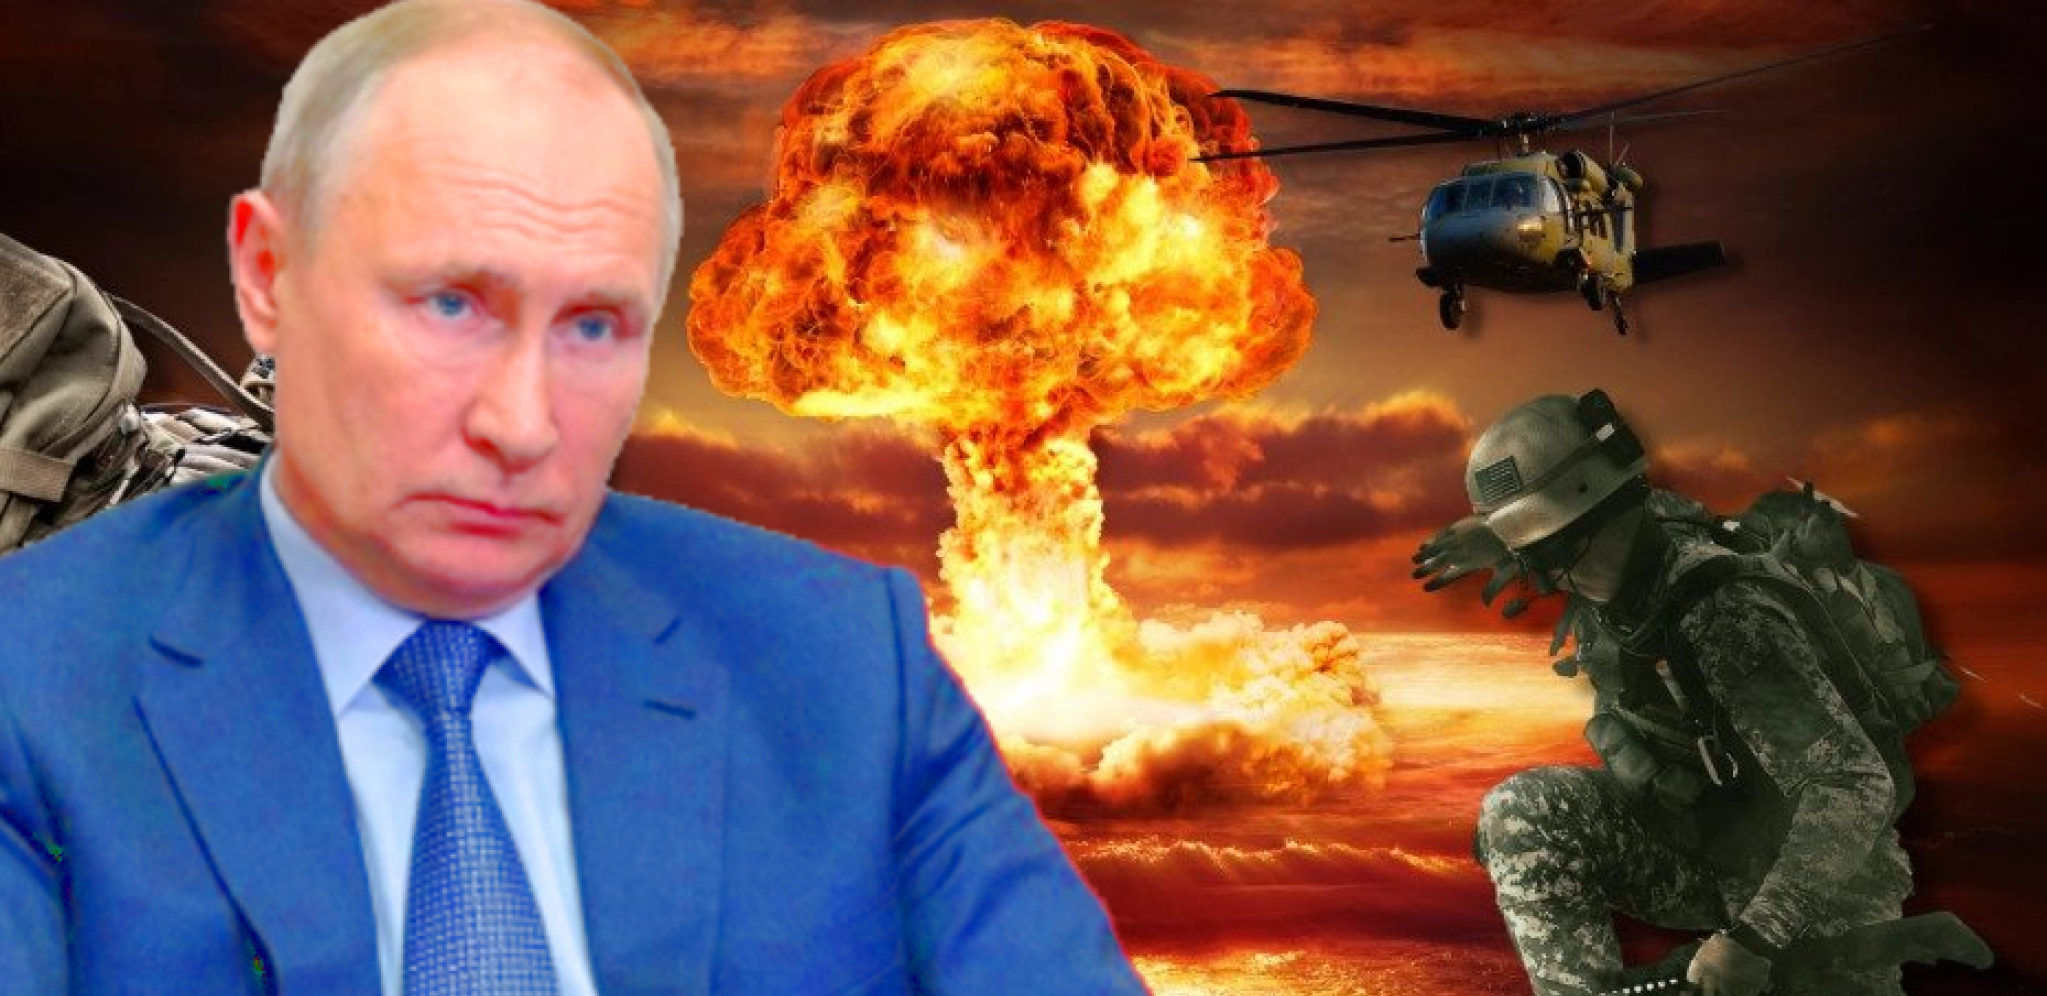 BALTIČKO MORE POSTAJE "NATO JEZERO" Putinov odgovor može biti ubitačan!